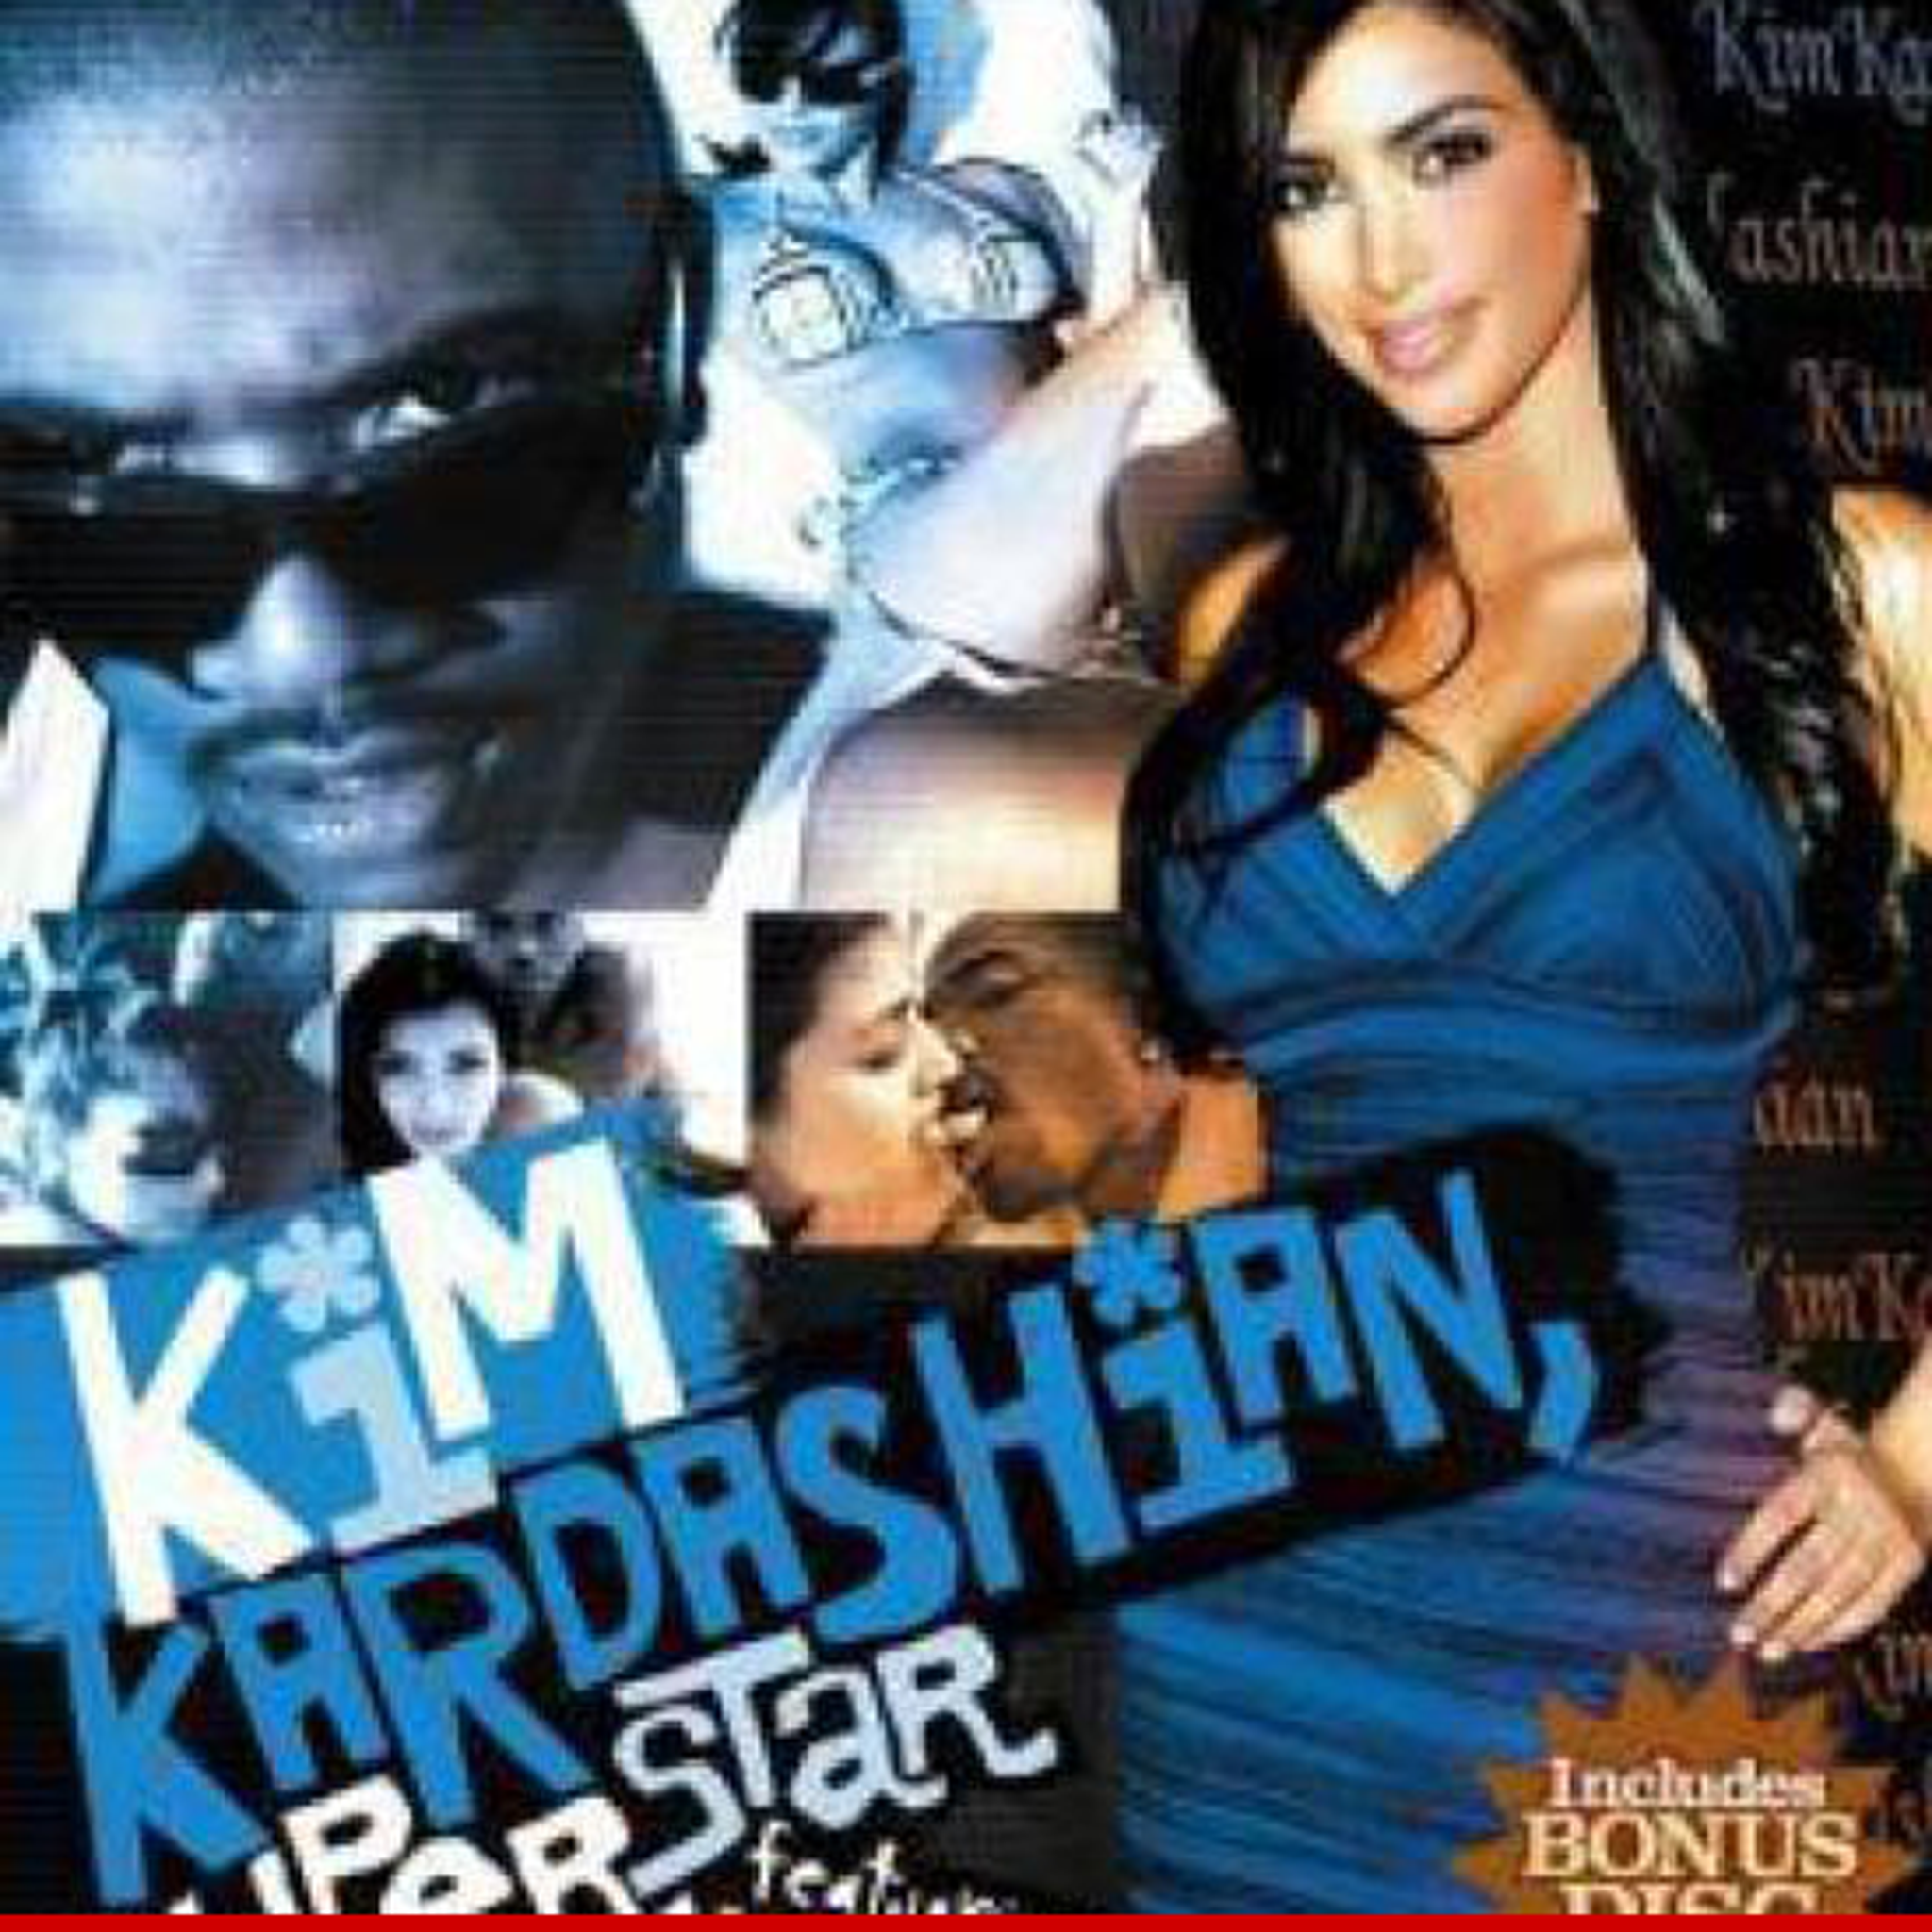 Www Xxx Xxx Xxx Sxe - Kim Kardashian Sex Tape Company -- There Is NO Second Tape!!!